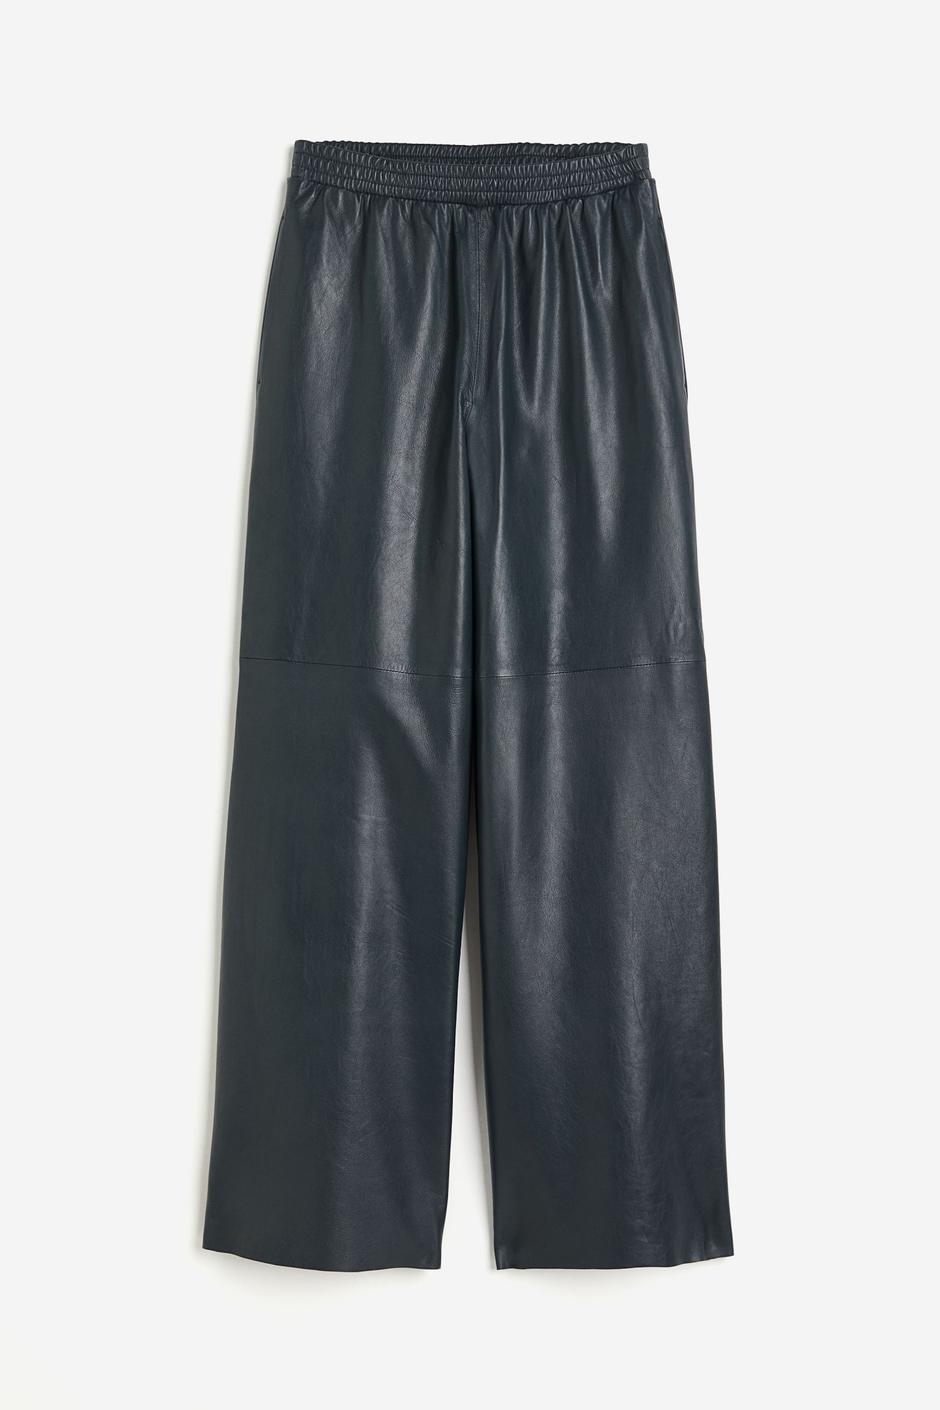 Foto: H&M, kožne hlače u plavoj boji (299 eura) | Autor: H&M